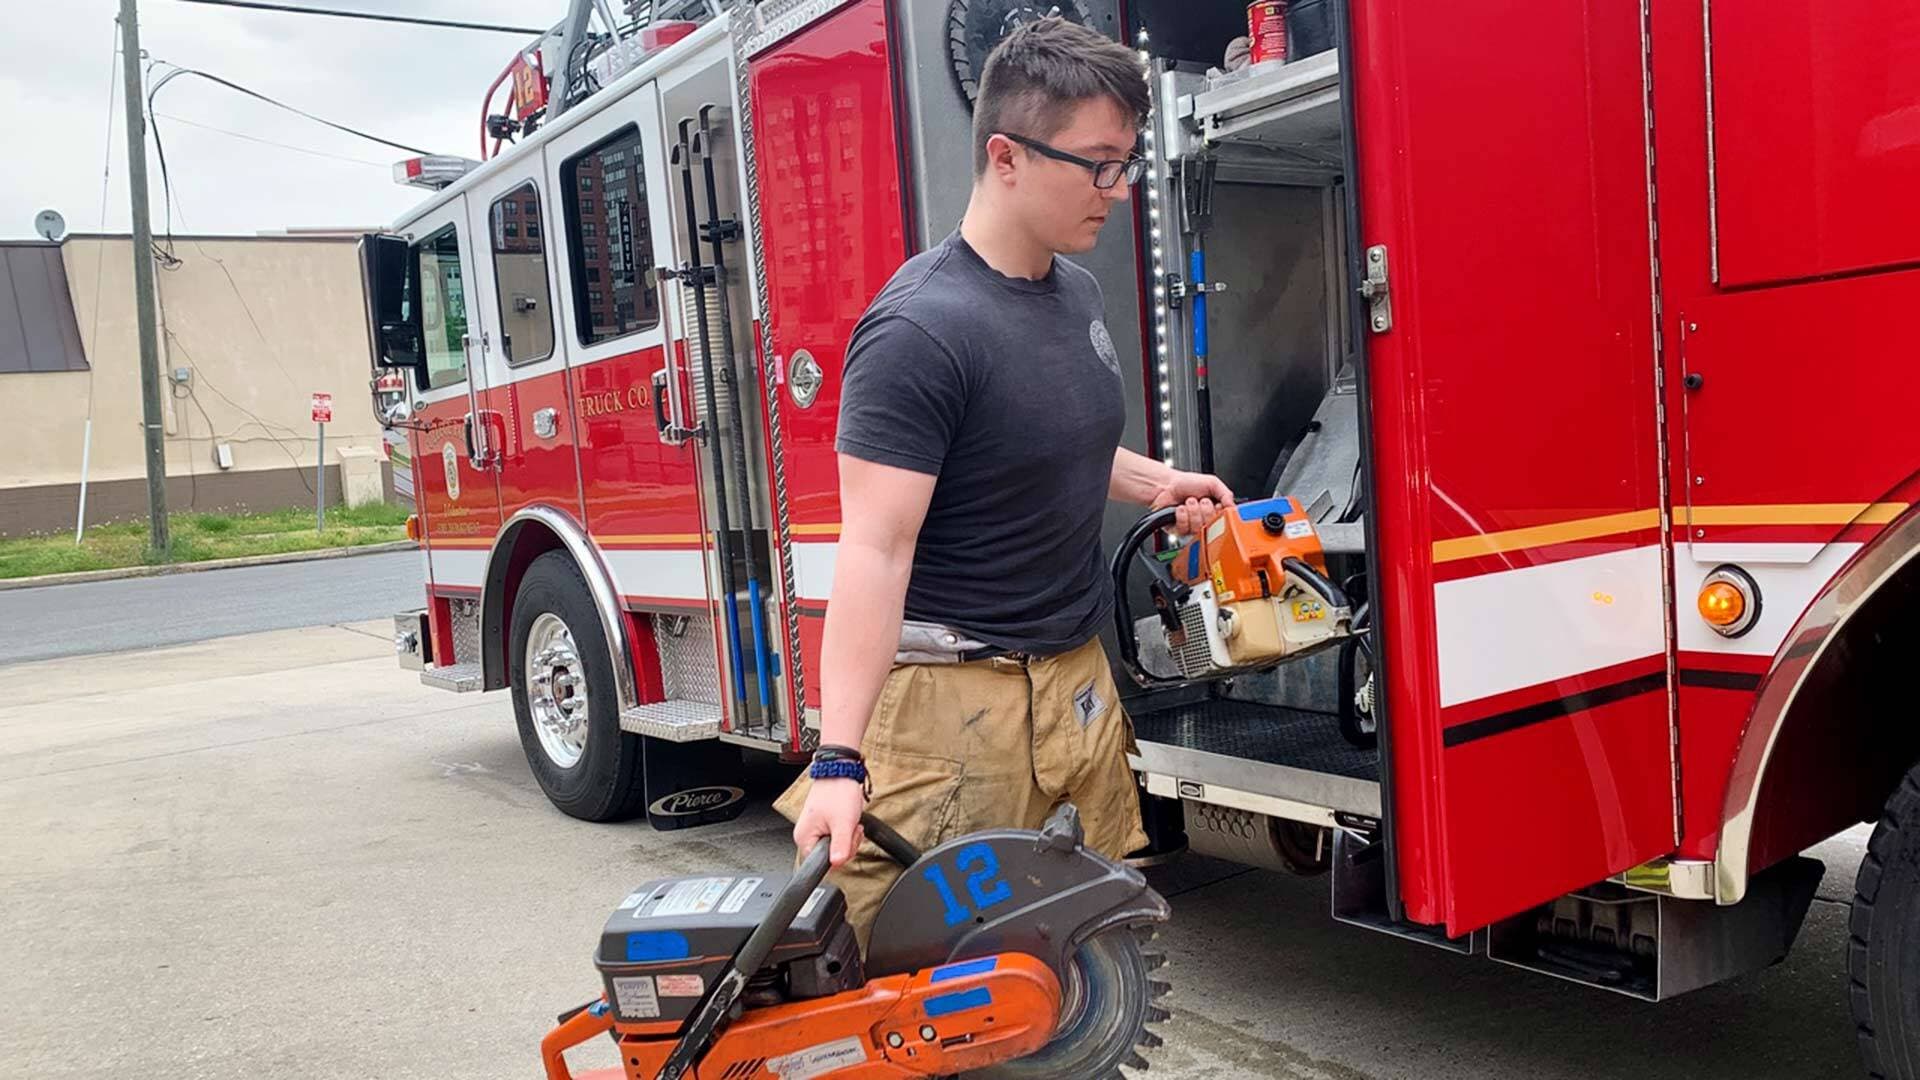 Student volunteer loads equipment onto a firetruck